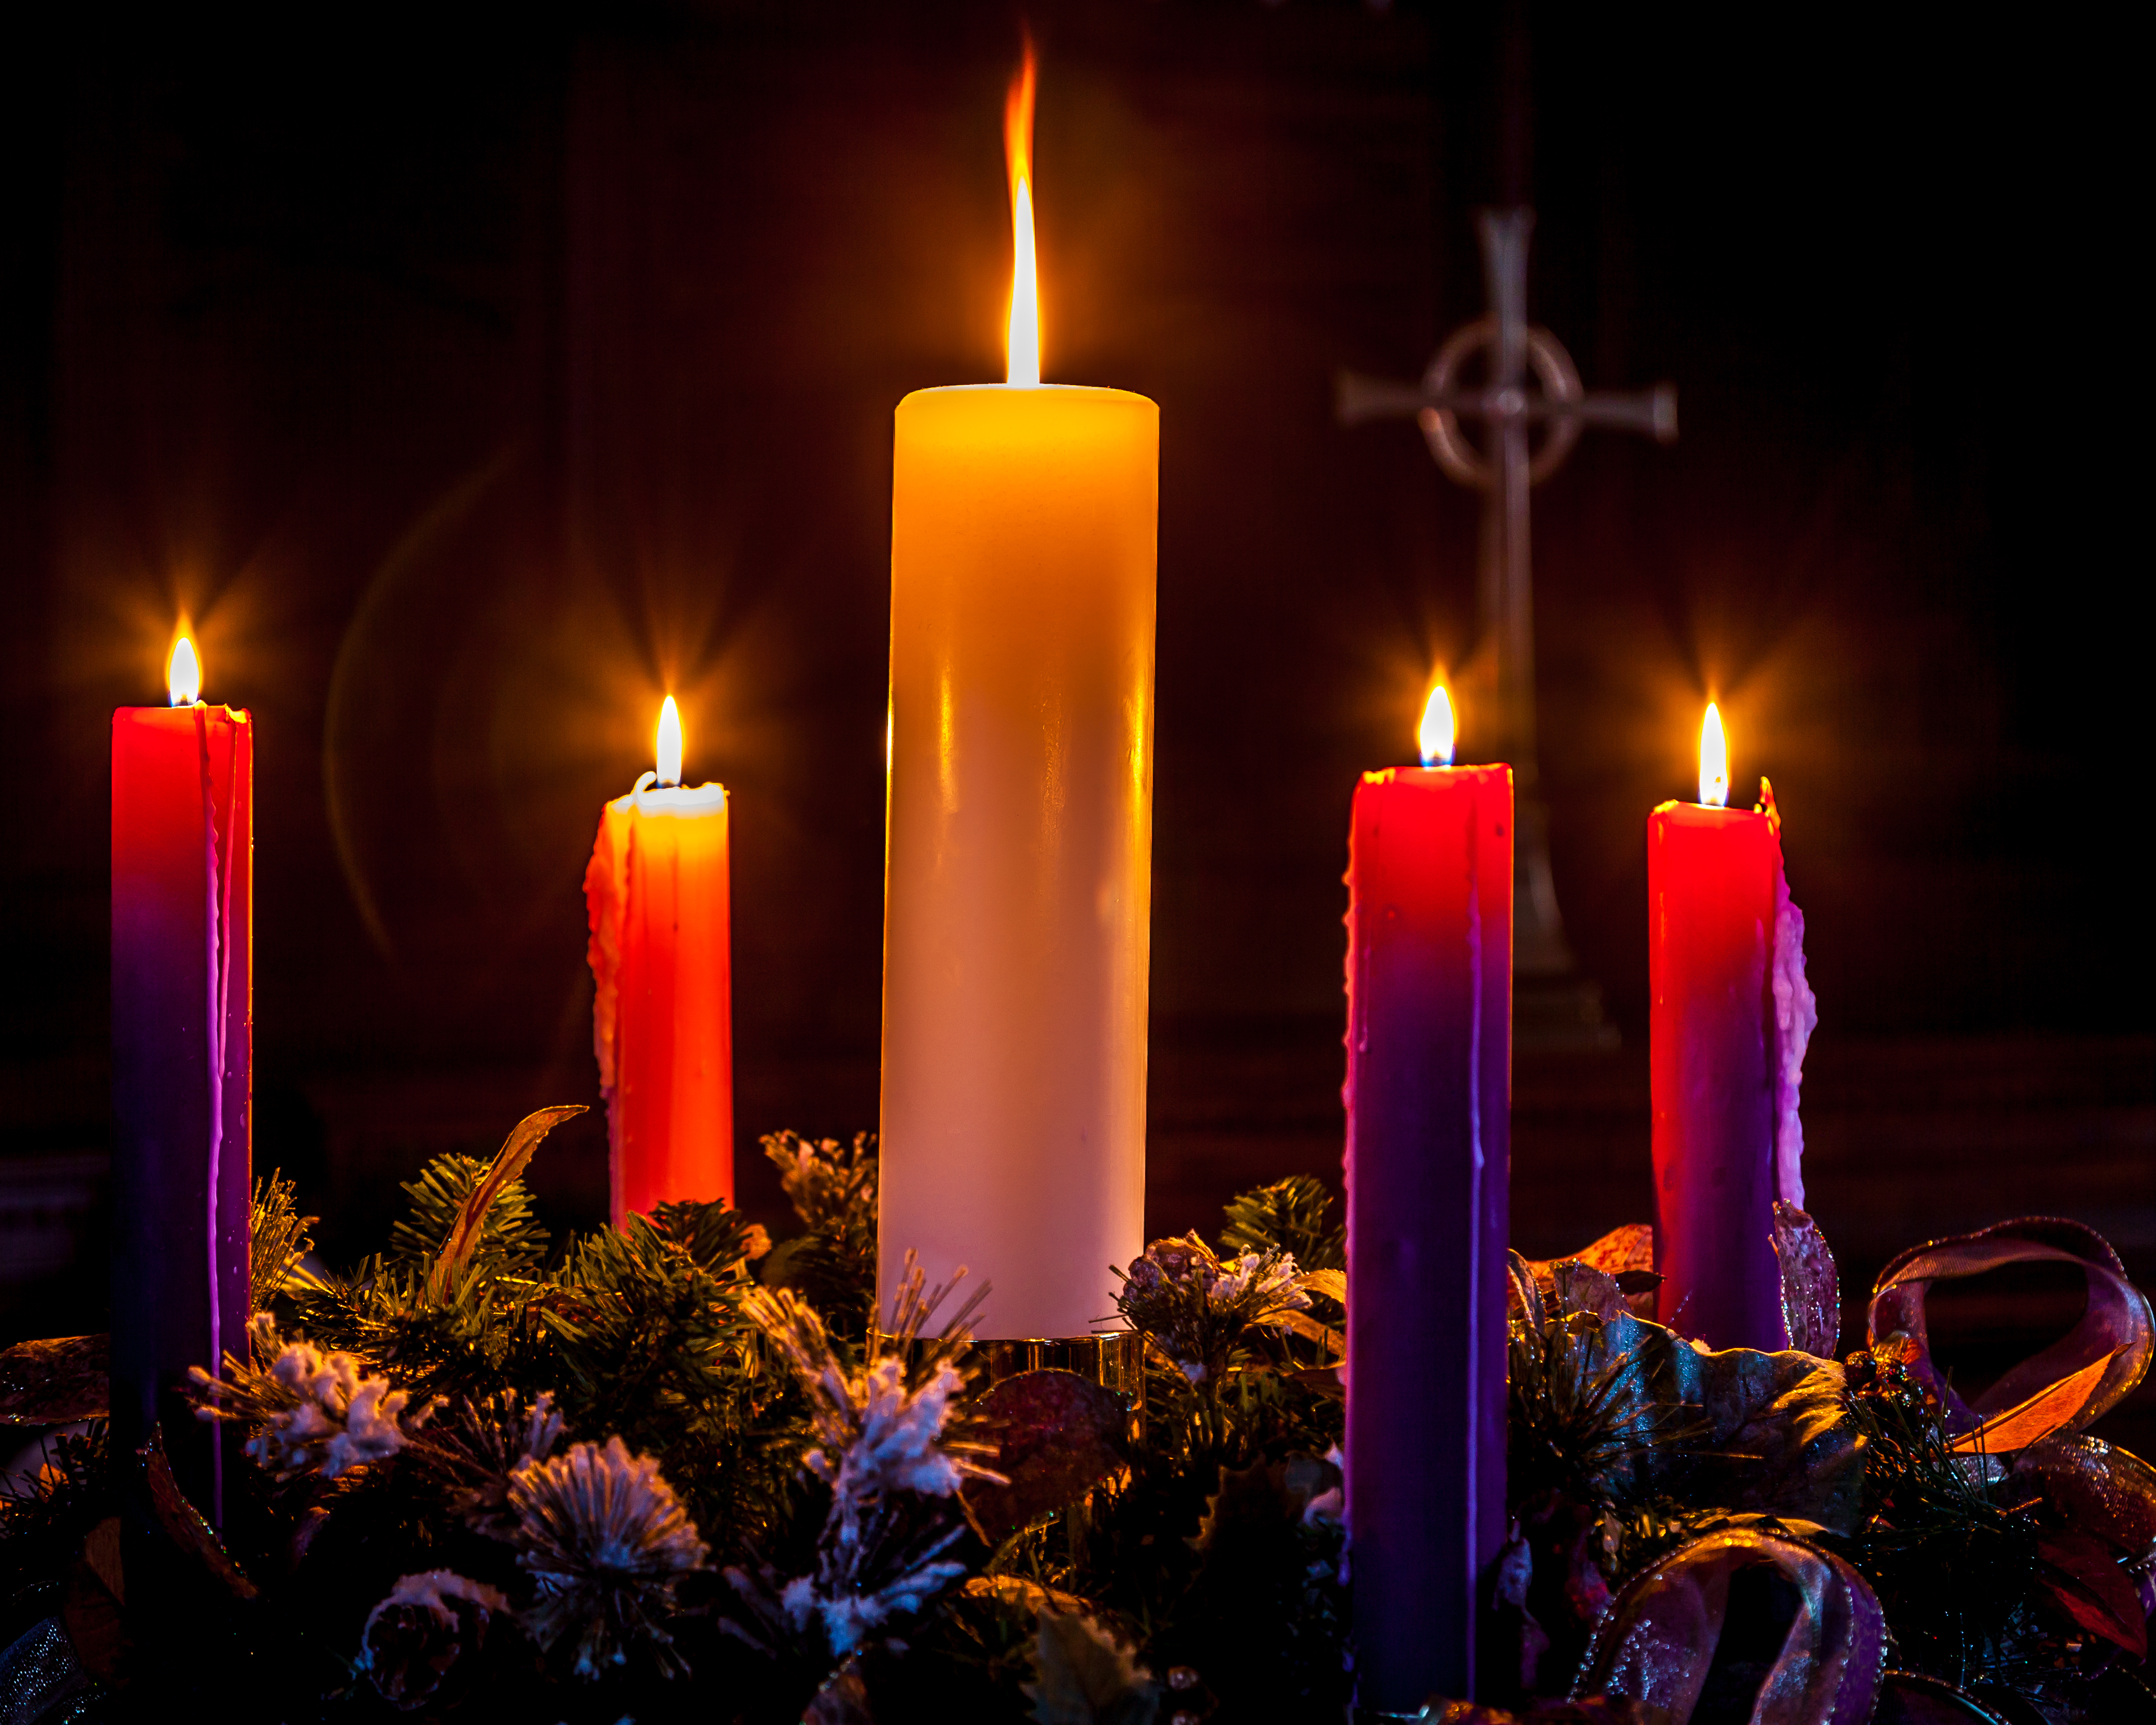 La corona de Adviento anuncia la llegada de la Navidad. (Foto Prensa Libre: Shutterstock)